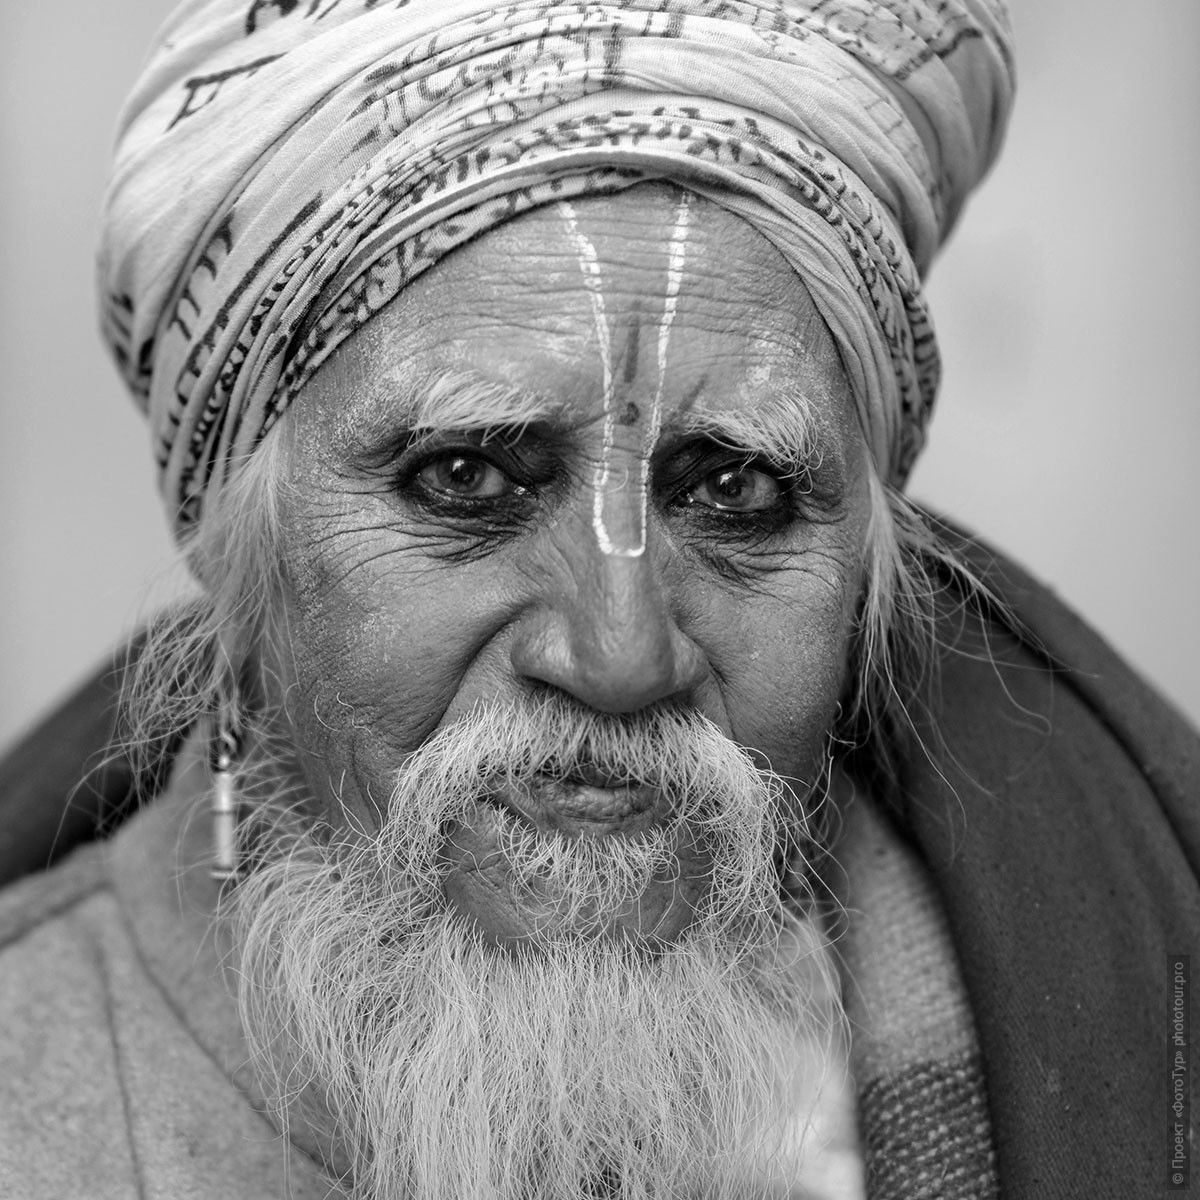 Индийский паломник, Гвалиор. Фотографии людей из Индии. Фототур на праздник Холи в Индию.